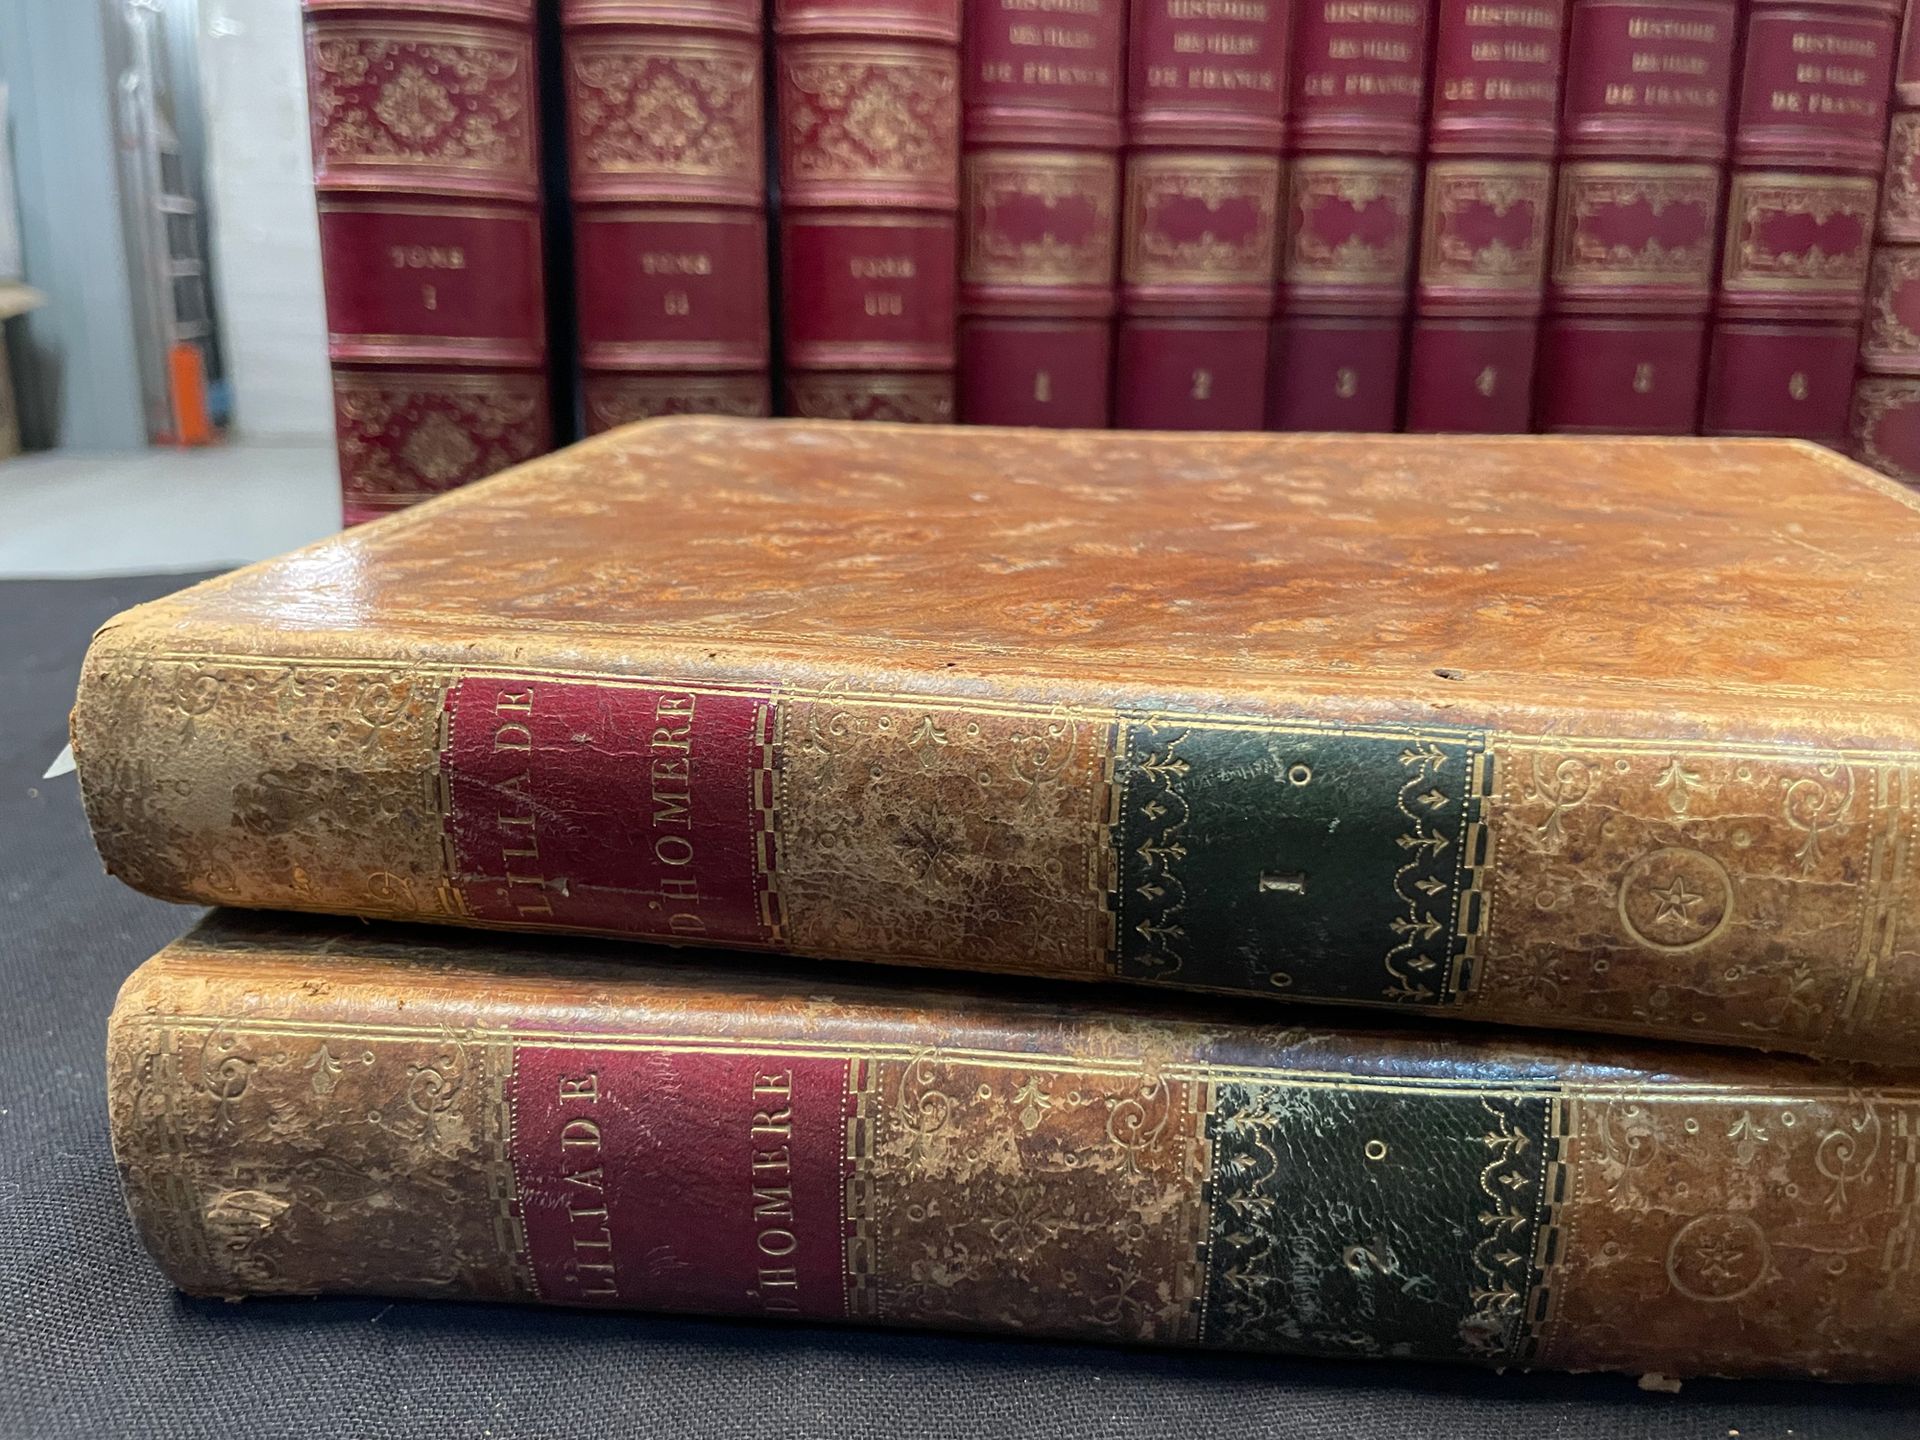 HOMERE L'Iliade e l'Odissea. 1795.
2 volumi
Così com'è